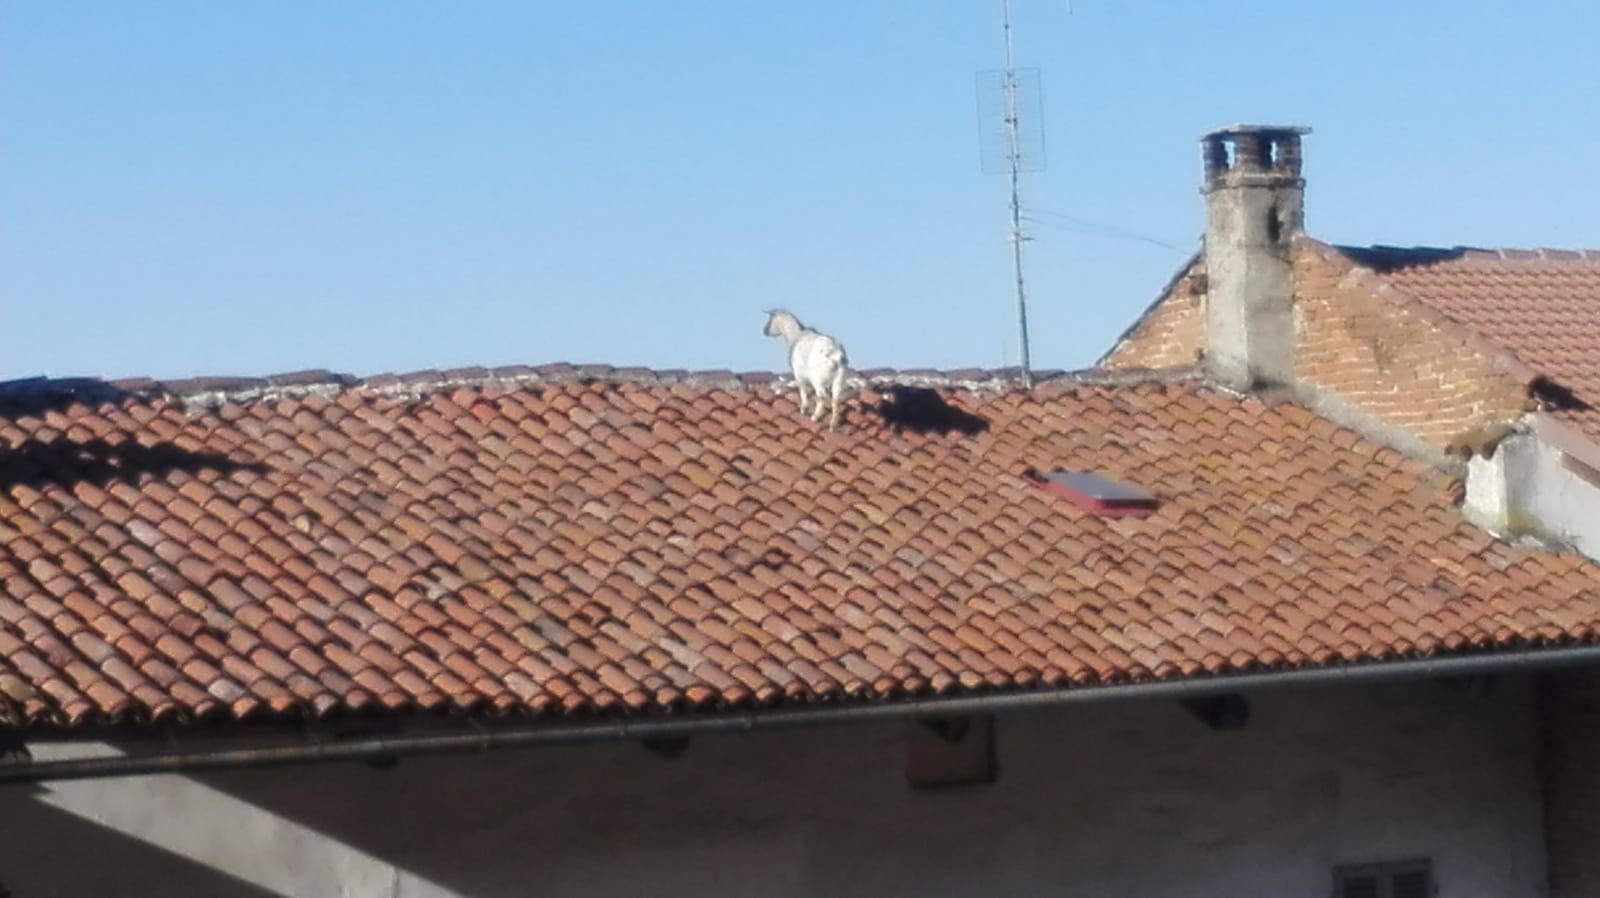 capra sul tetto